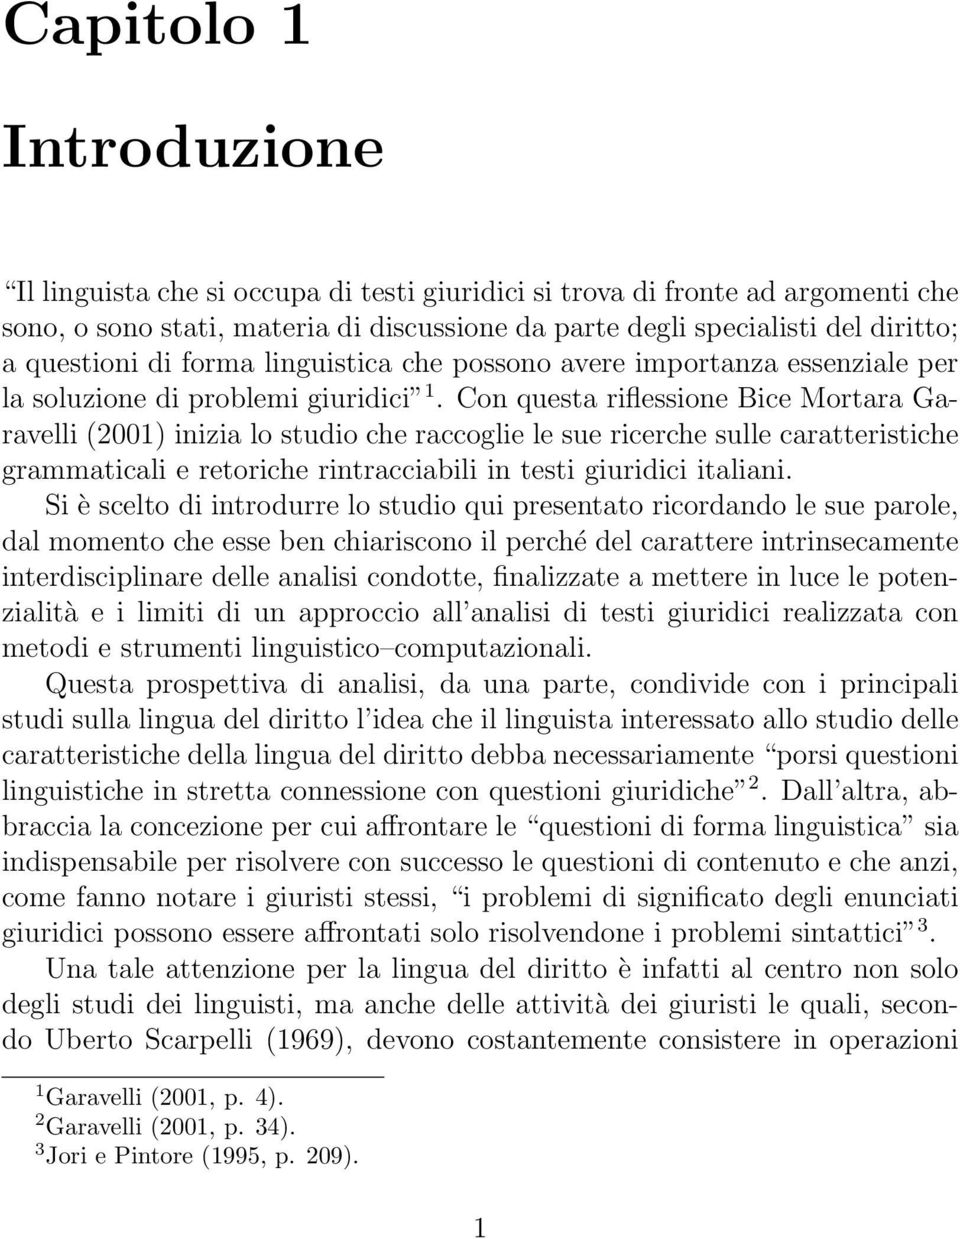 Con questa riflessione Bice Mortara Garavelli (2001) inizia lo studio che raccoglie le sue ricerche sulle caratteristiche grammaticali e retoriche rintracciabili in testi giuridici italiani.